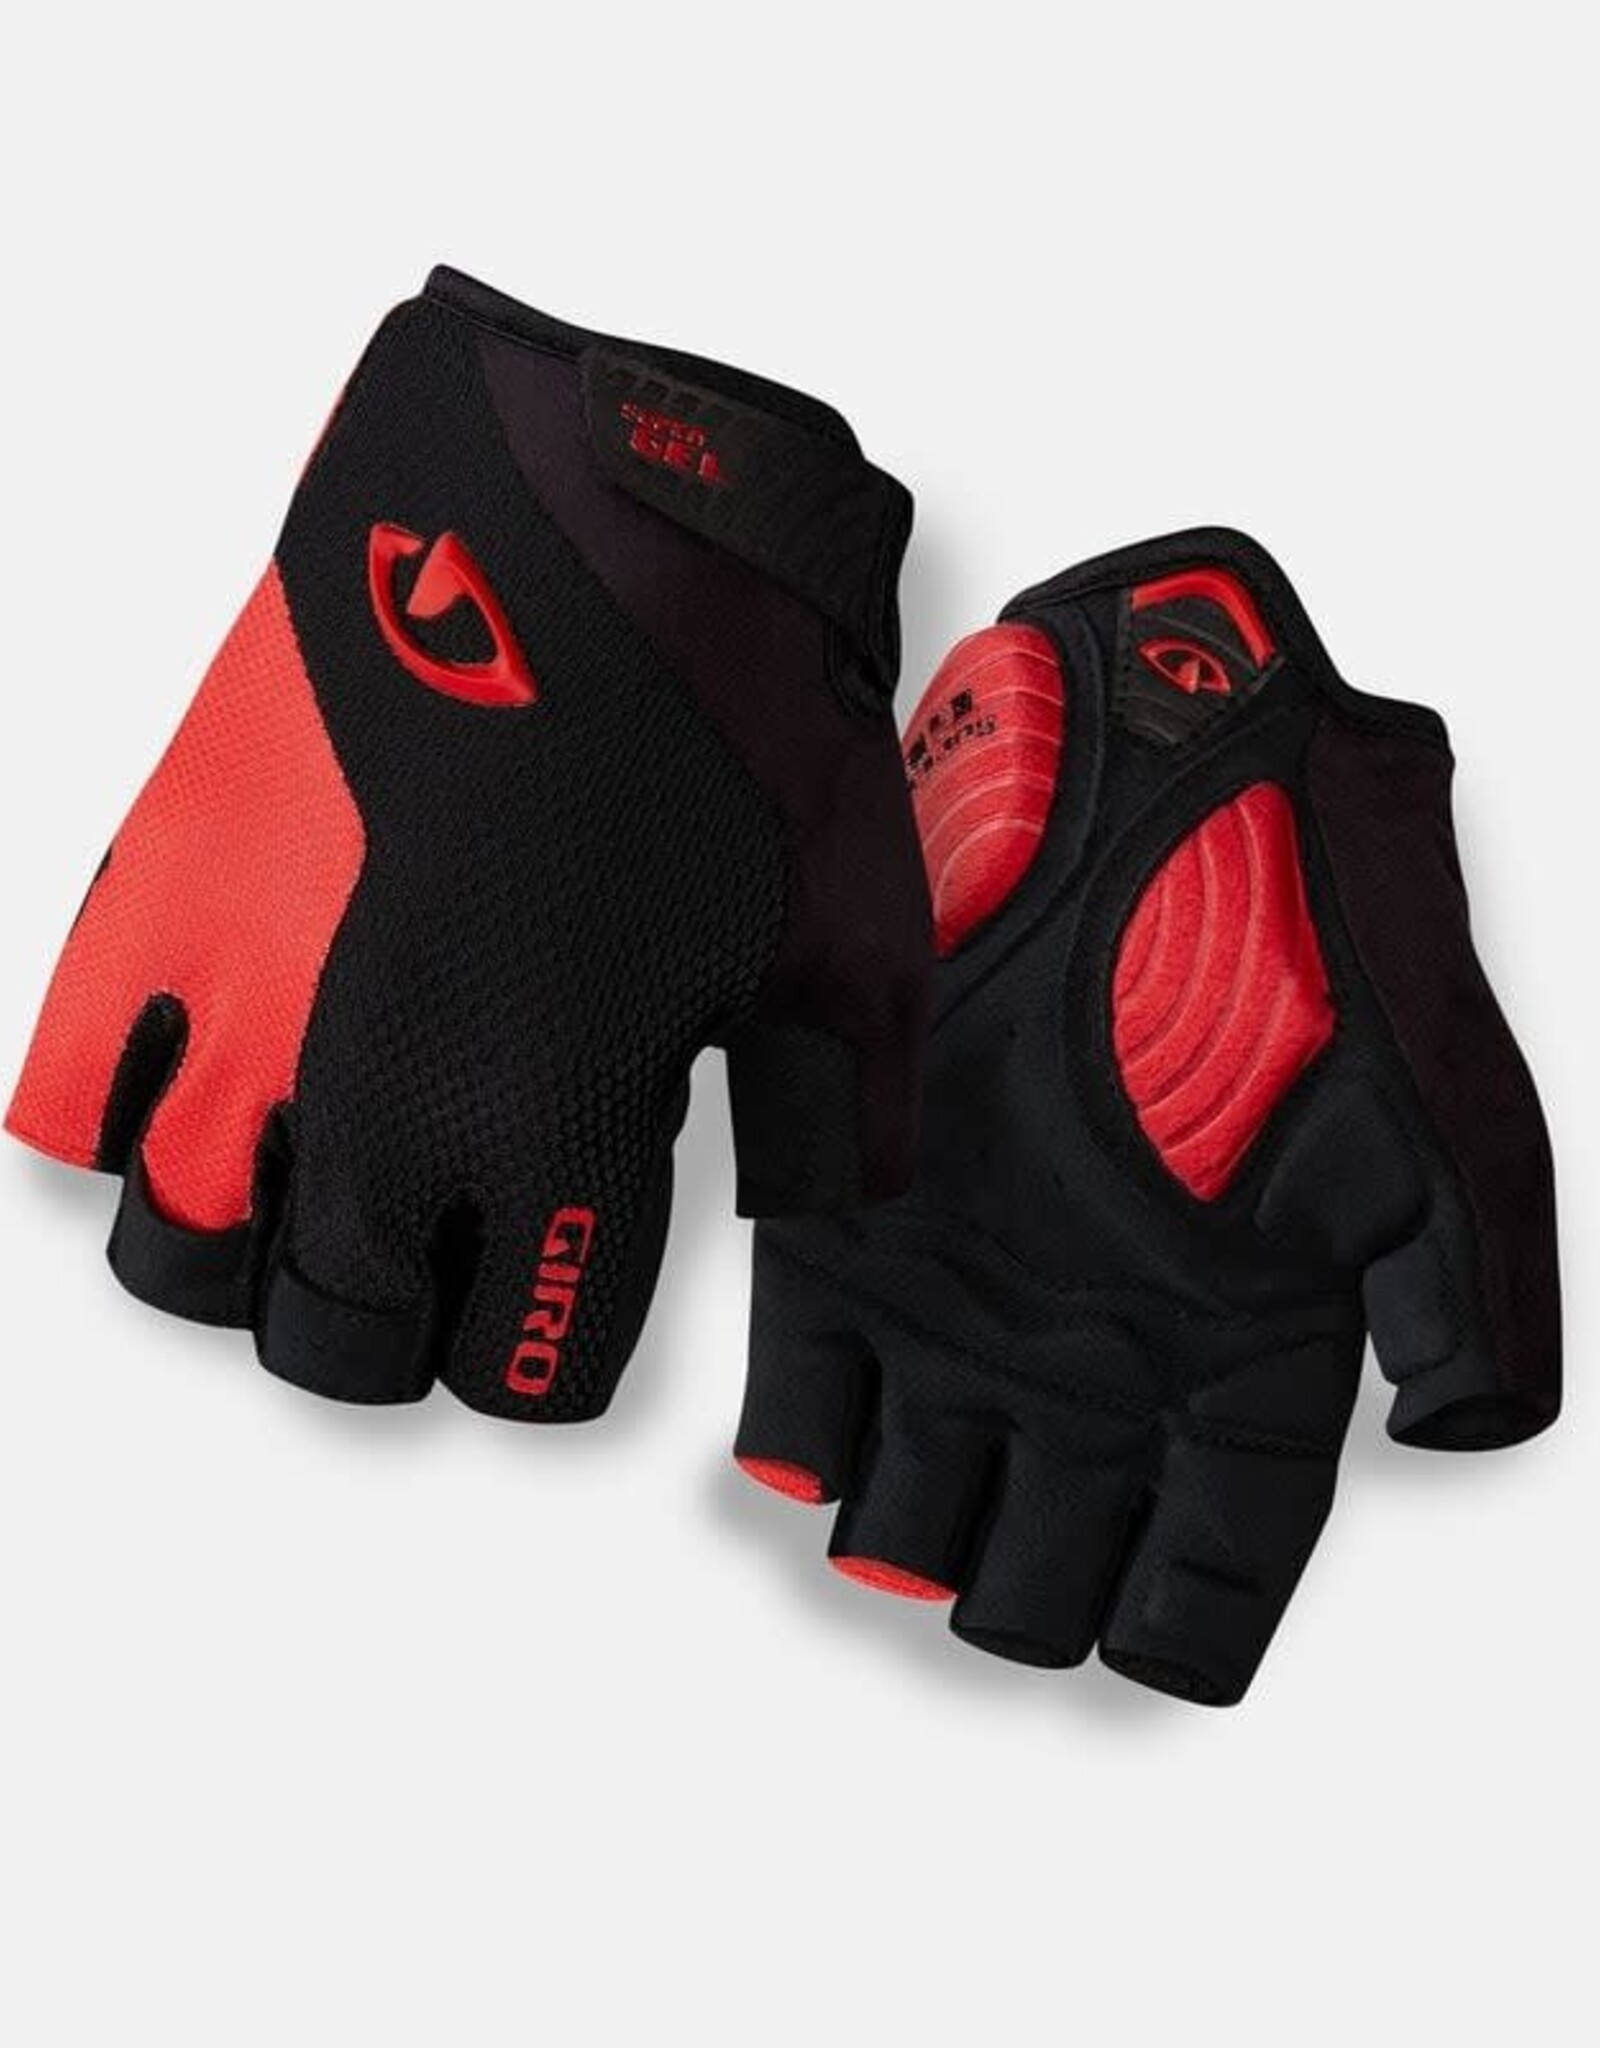 Giro Giro Strade Dure Supergel Glove Black/Bright Red XXL 7068723